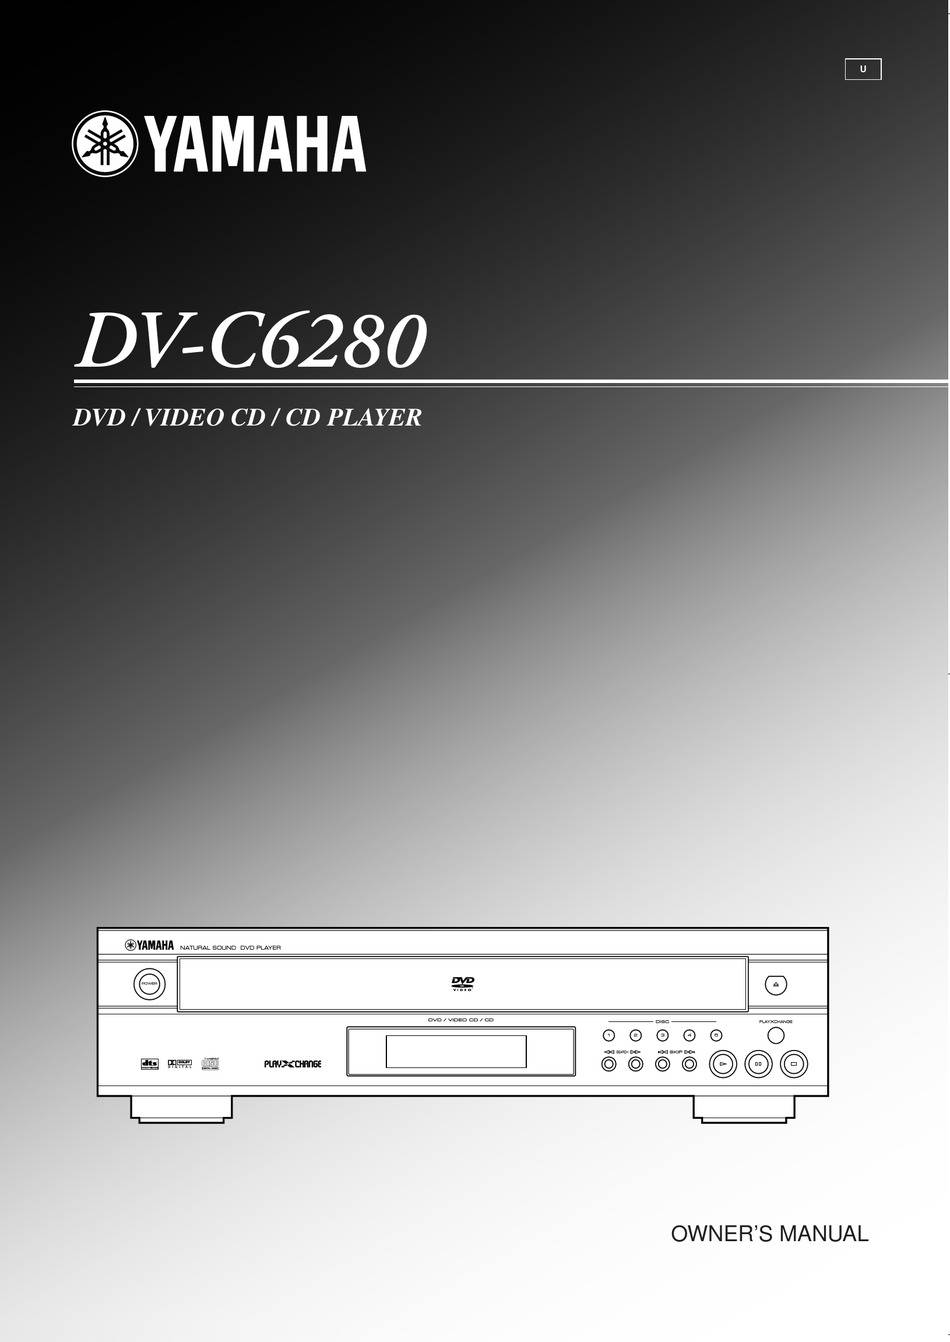 Yamaha DV-C6280